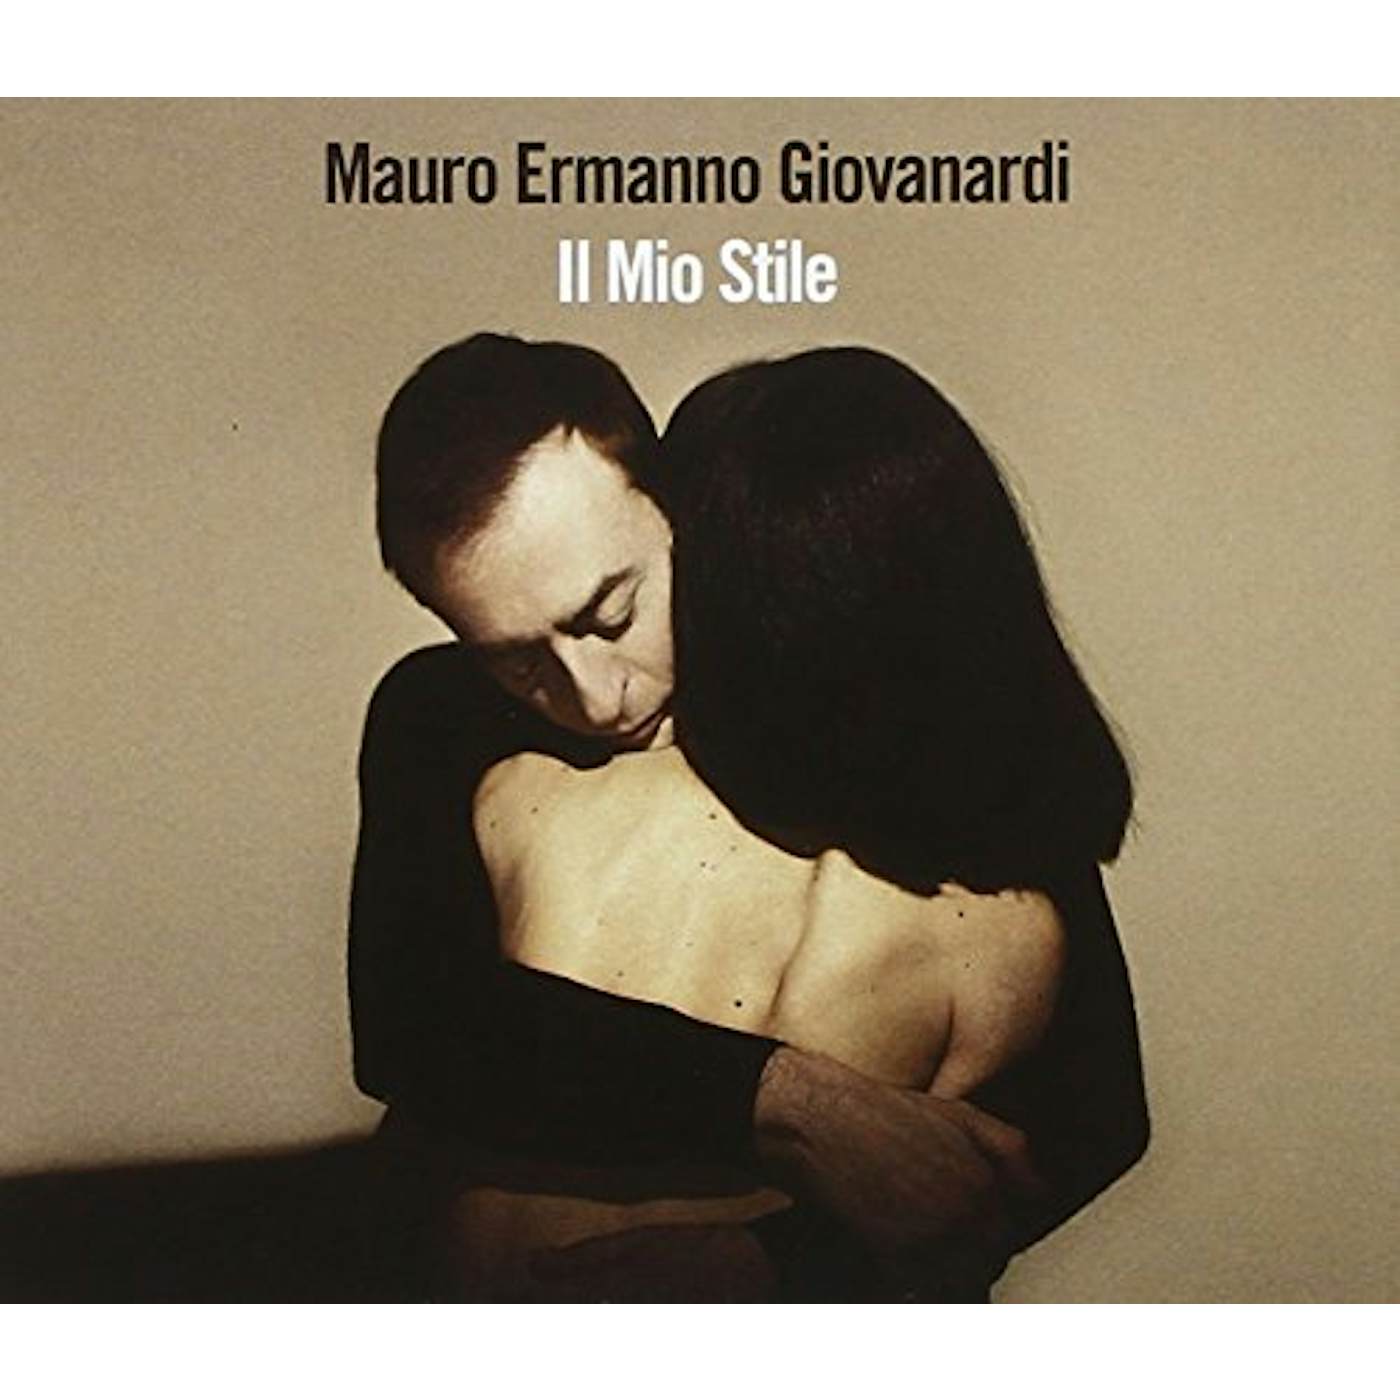 Mauro Ermanno Giovanardi IL MIO STILE CD